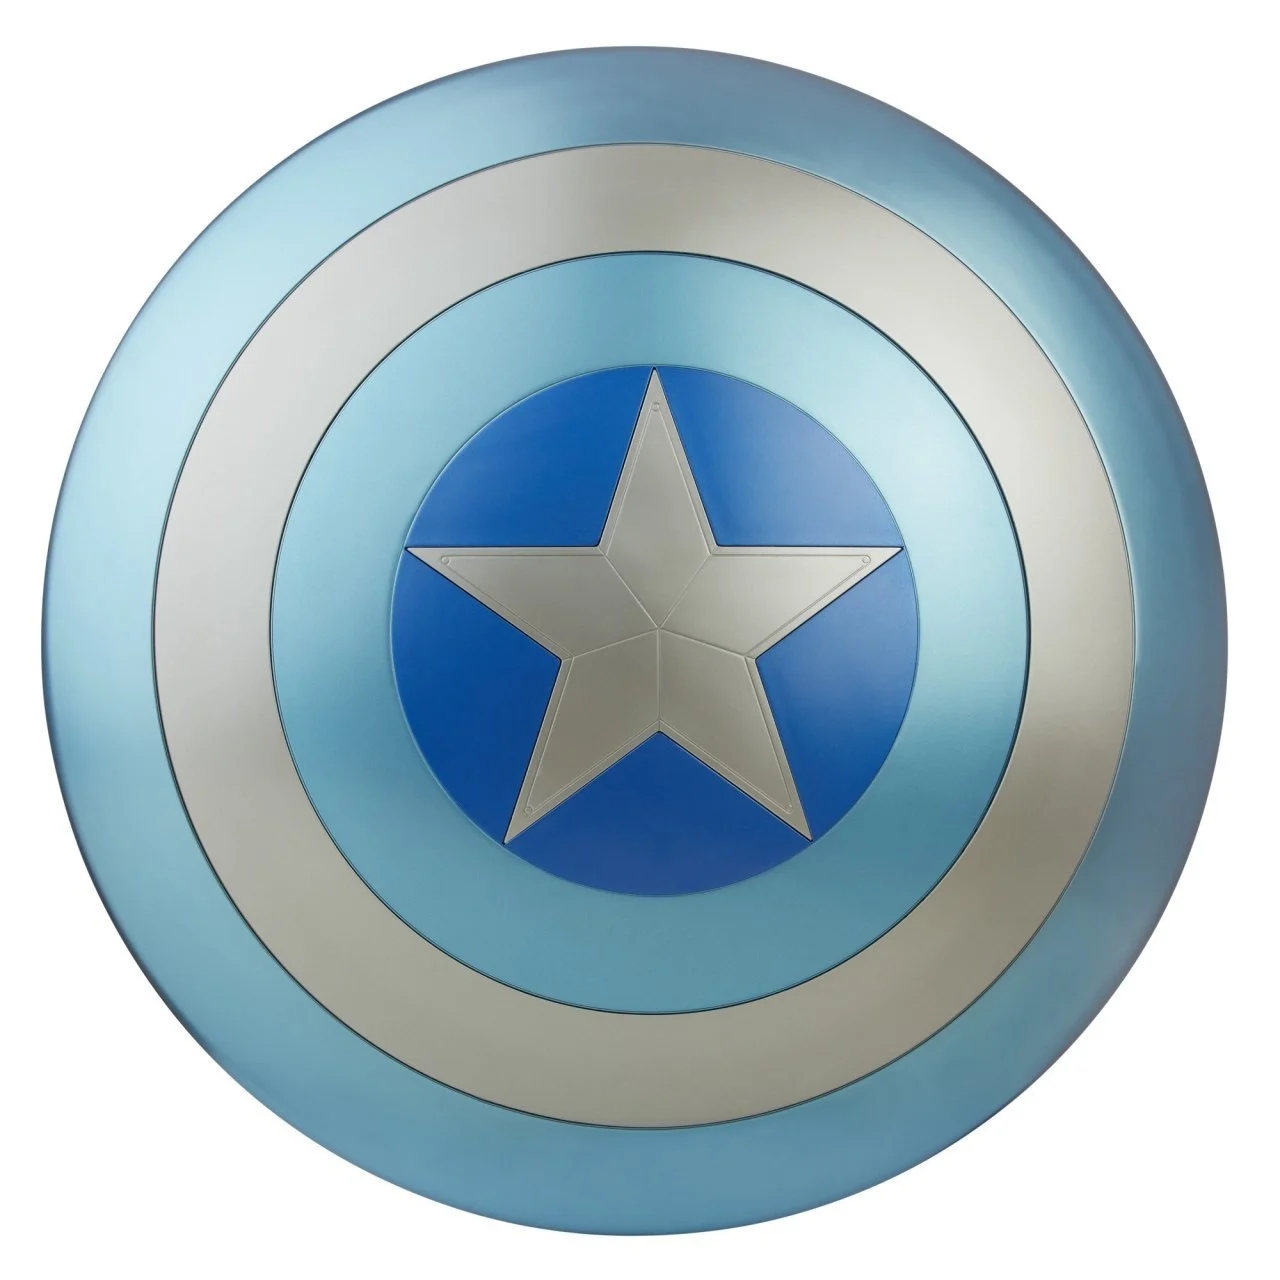 Marvel Legends Captain America The Winter Soldier Shield Replica